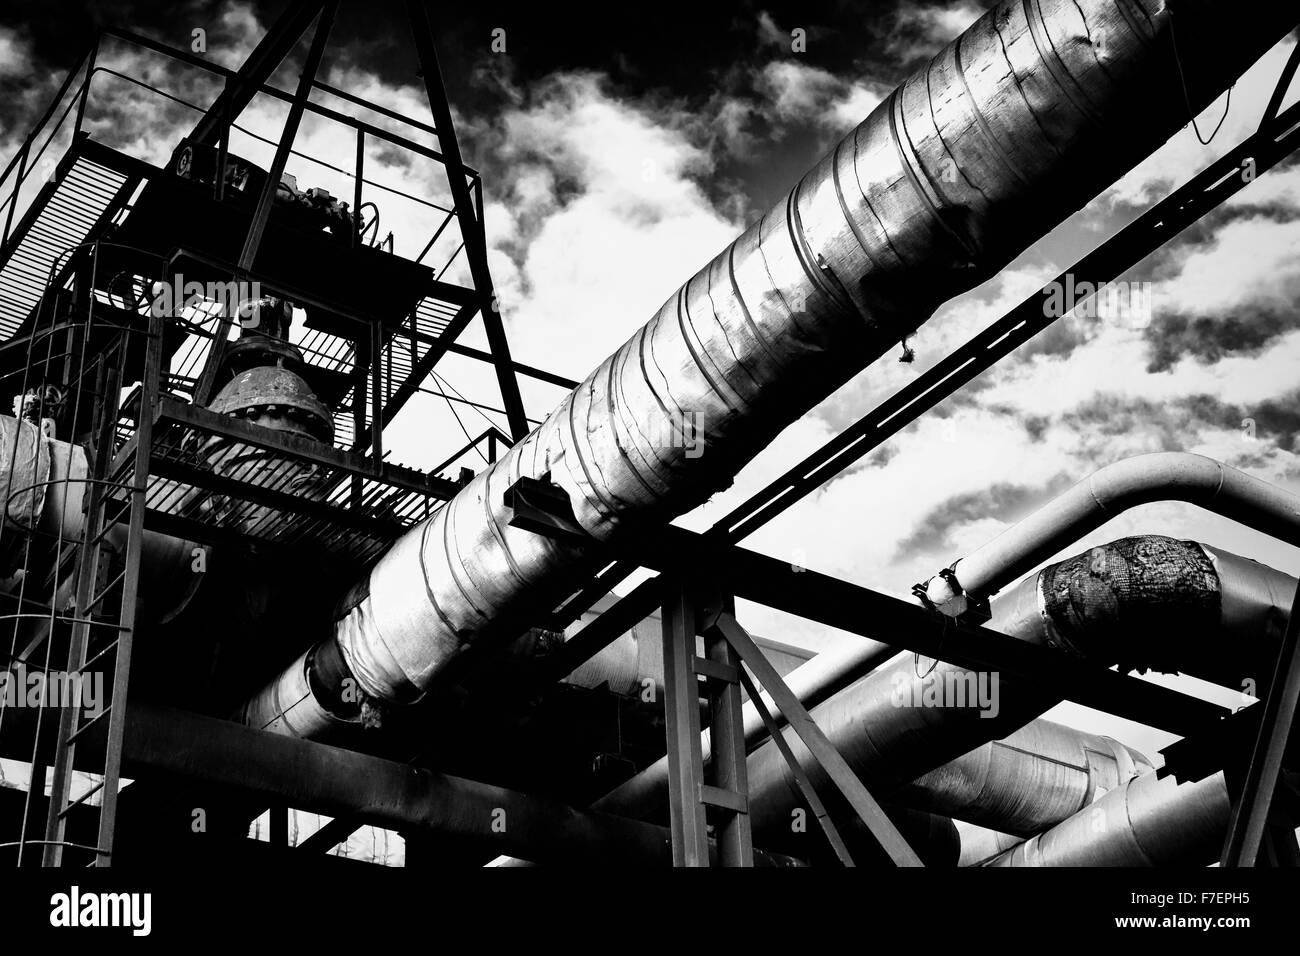 Tuberías de metal industrial de una fábrica que transporta agua/gas/materiales y pasarelas metálicas con un cielo nublado en blanco y negro mo Foto de stock